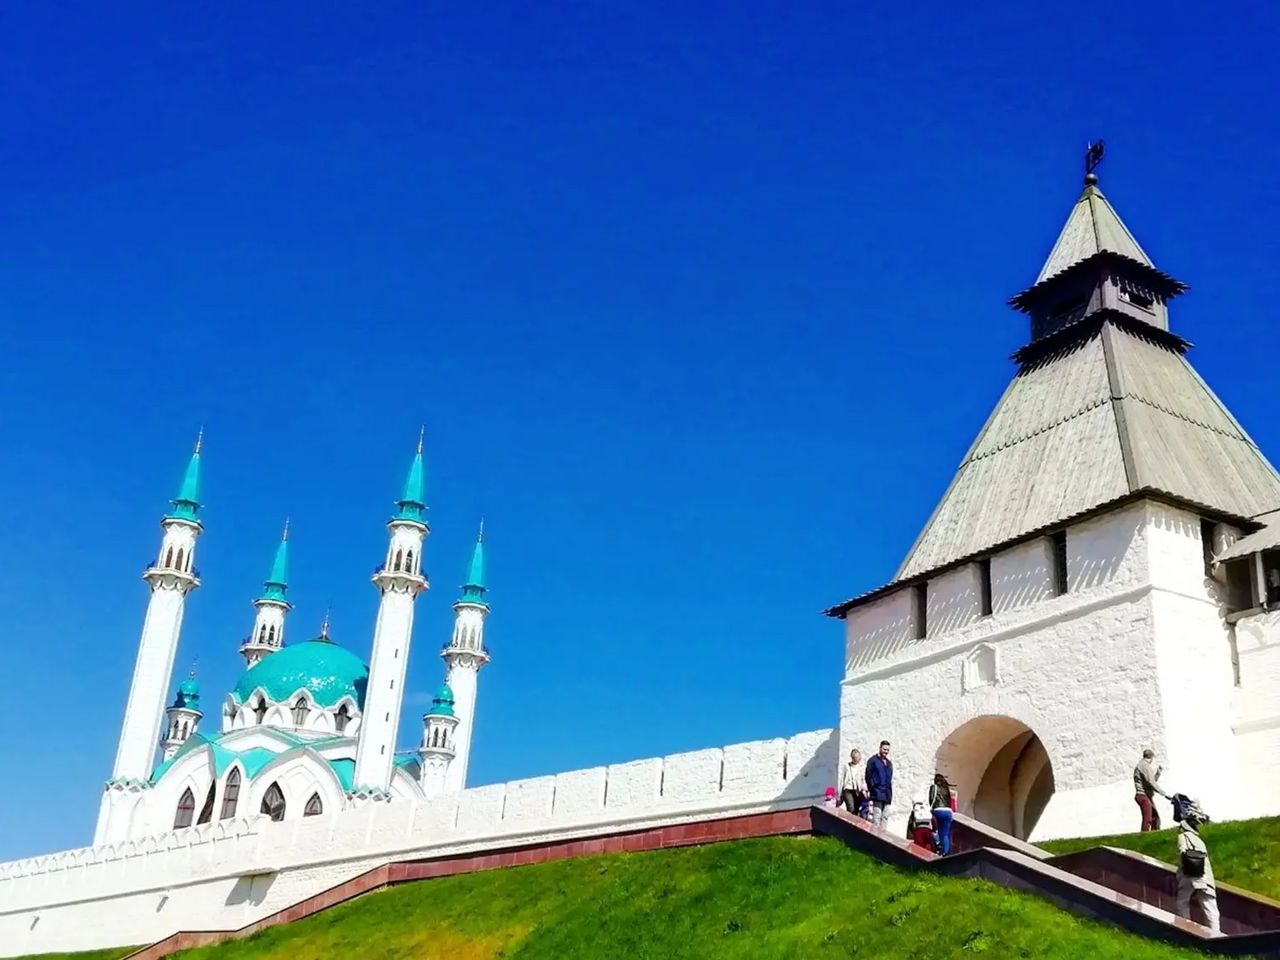 Казанский кремль и его окрестности  | Цена 5200₽, отзывы, описание экскурсии